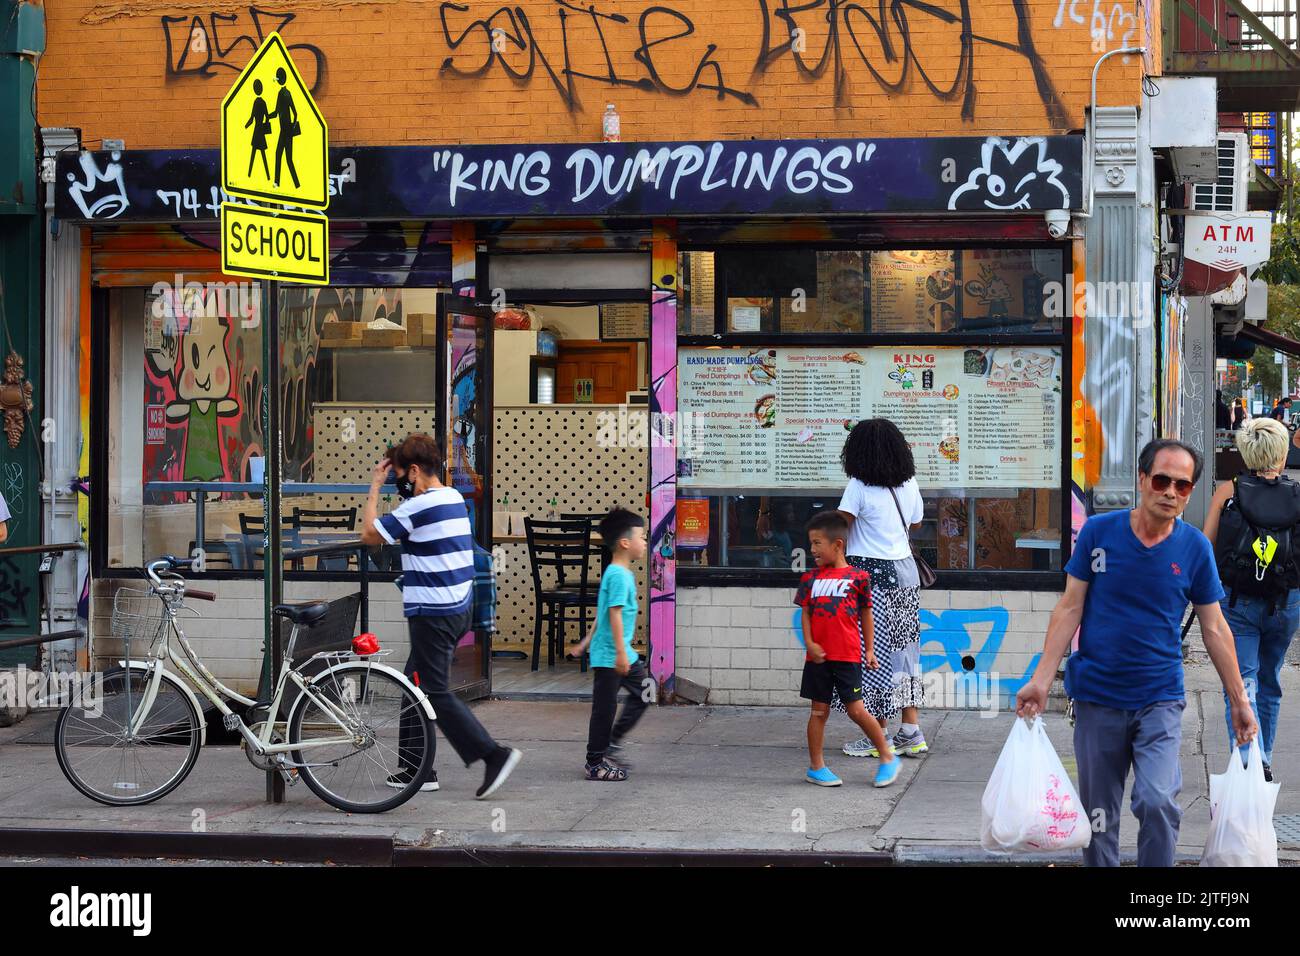 King dumplings, 74 Hester St, New York, New York, New York, boutique de souvenirs d'un magasin de boulettes frites dans le quartier chinois de Manhattan. Banque D'Images